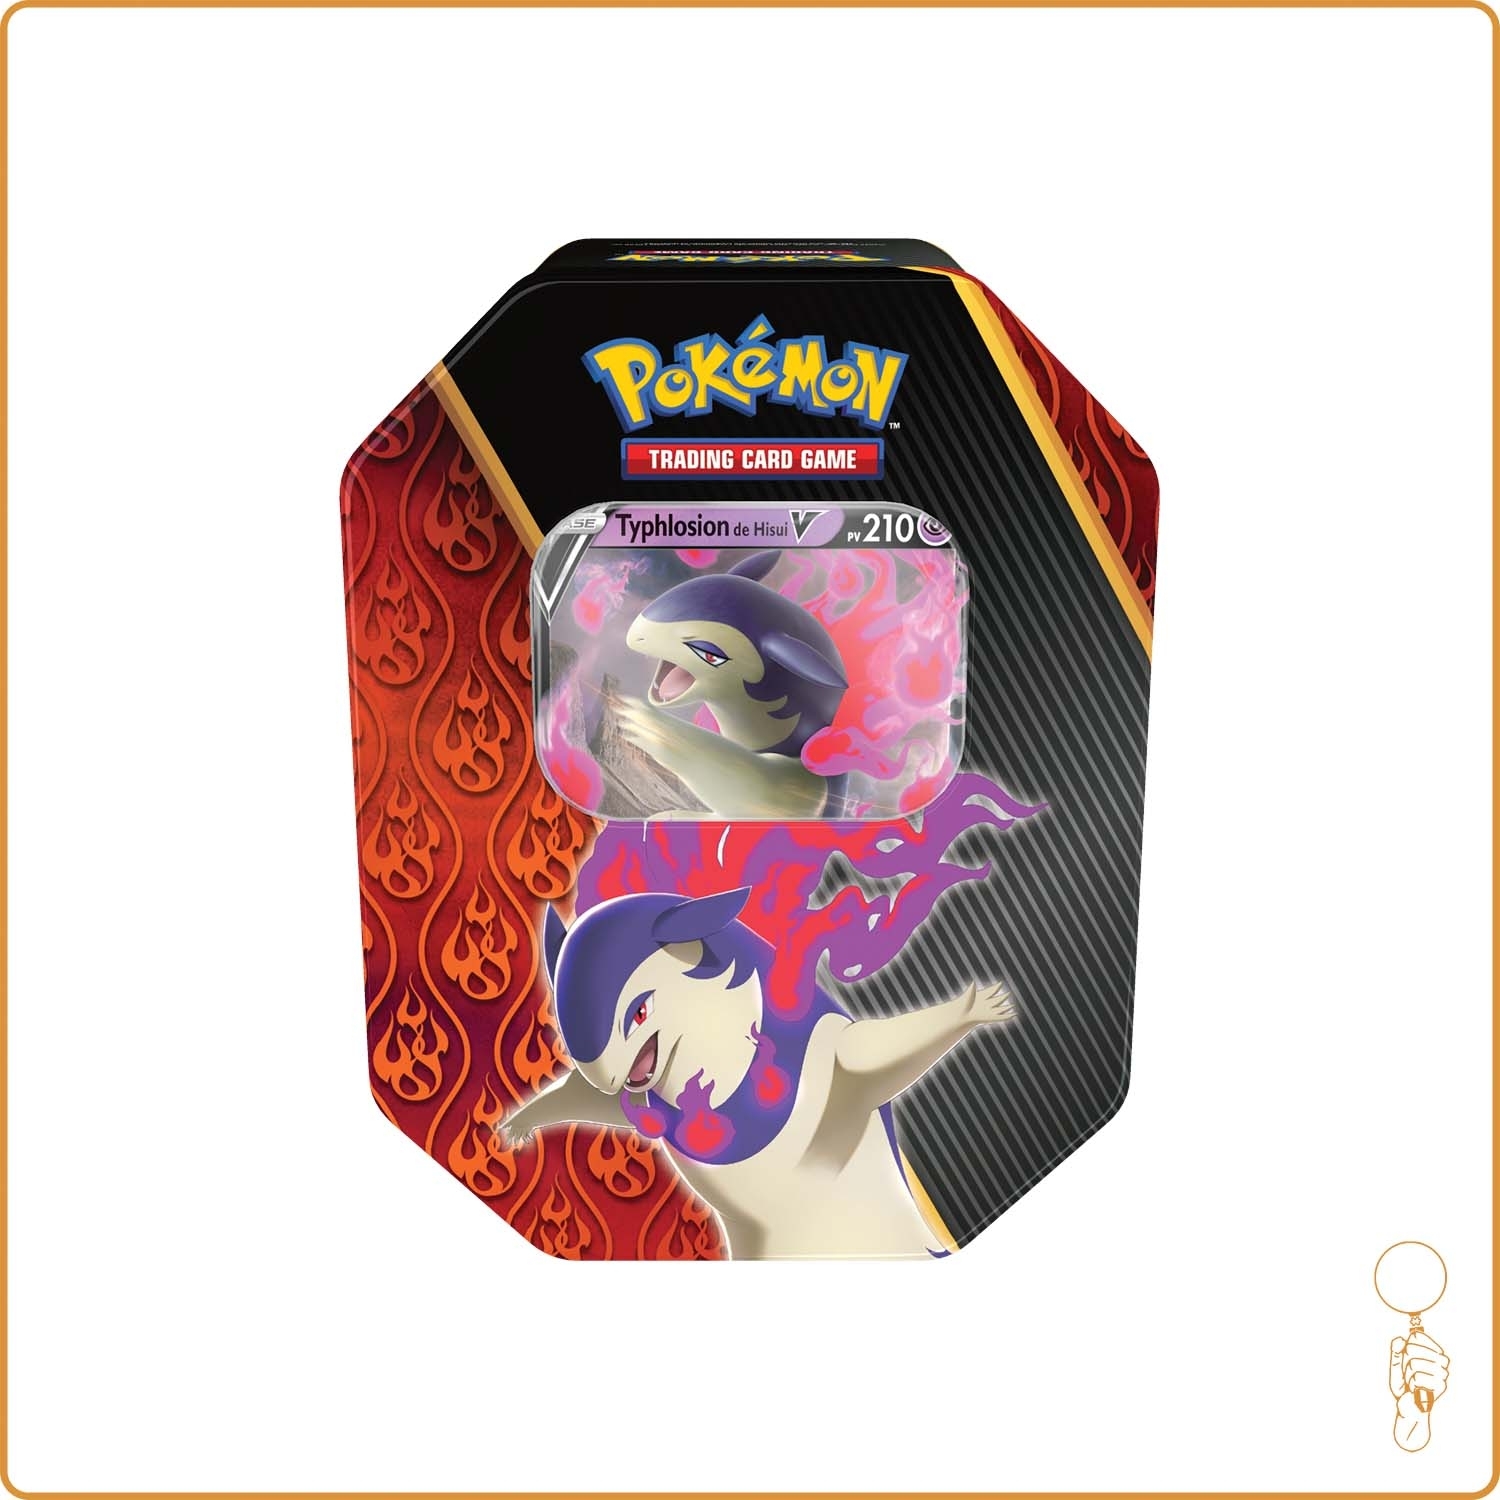 Pokébox - Pokemon - Typhlosion de Hisui V - Scellé - Français The Pokémon Company - 1